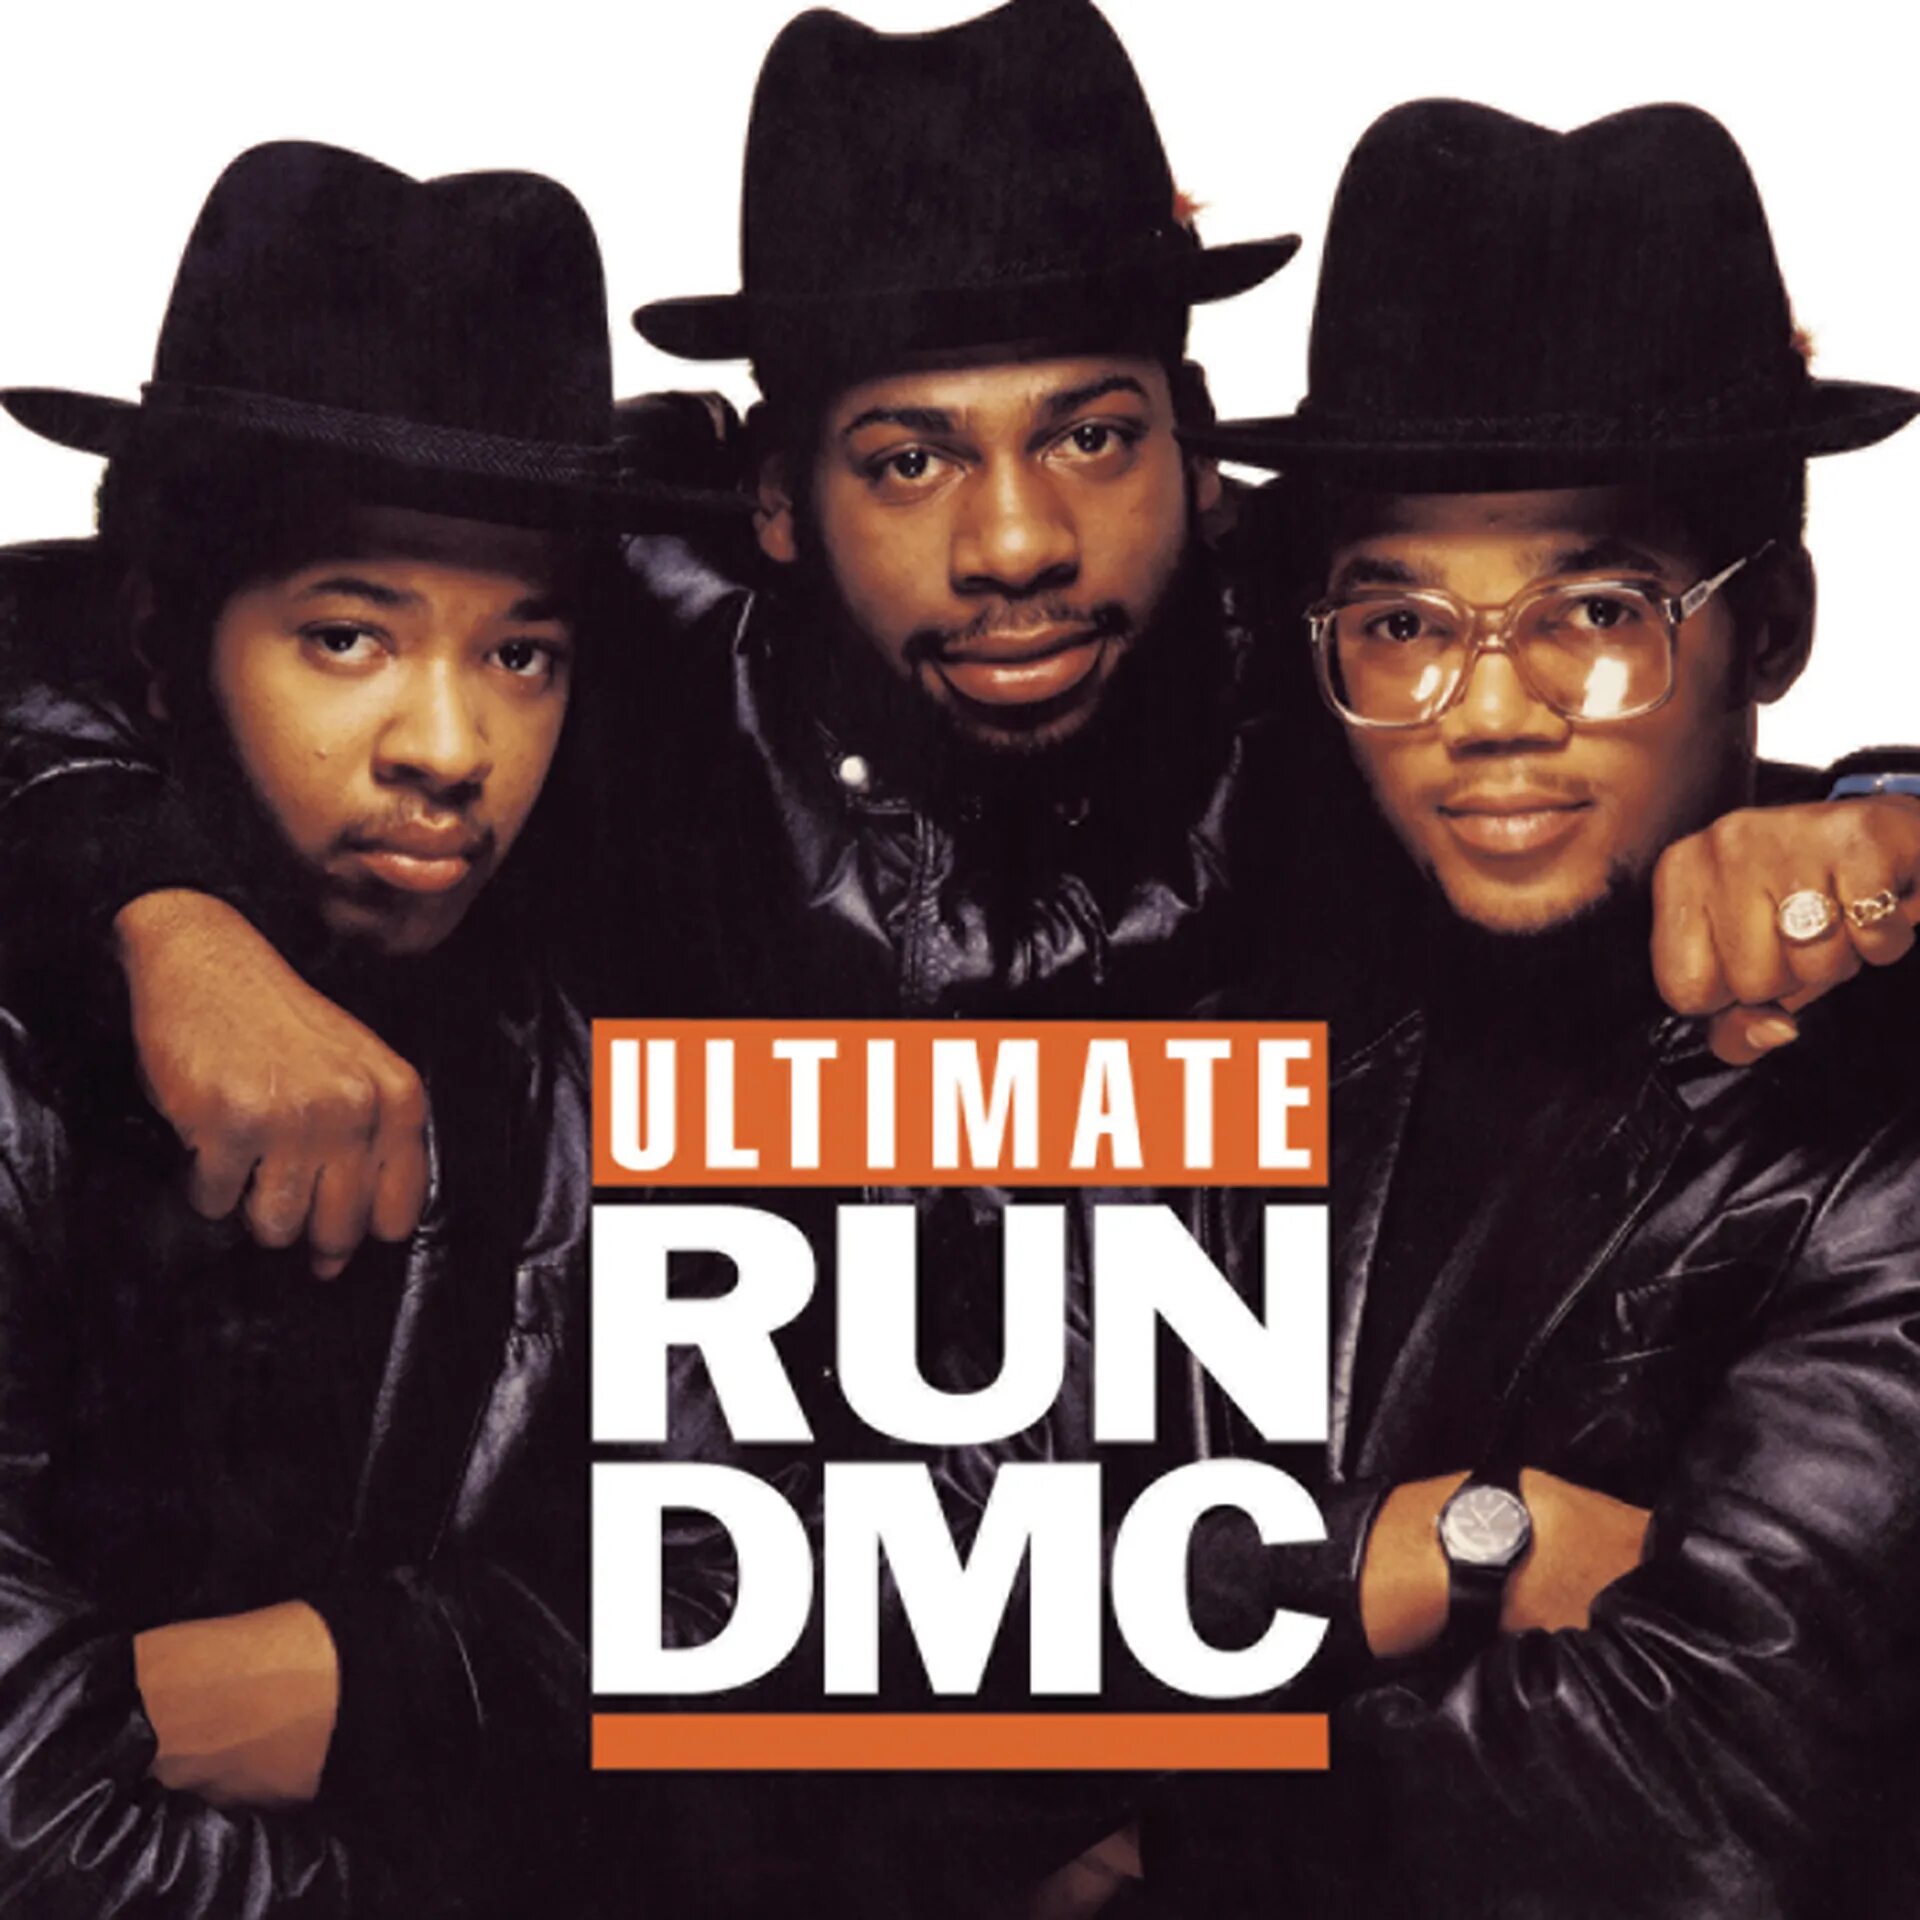 Run DMC 1984 album. Run DMC LP Cover. Run DMC CD диск. Run DMC Covers. Run dmc like